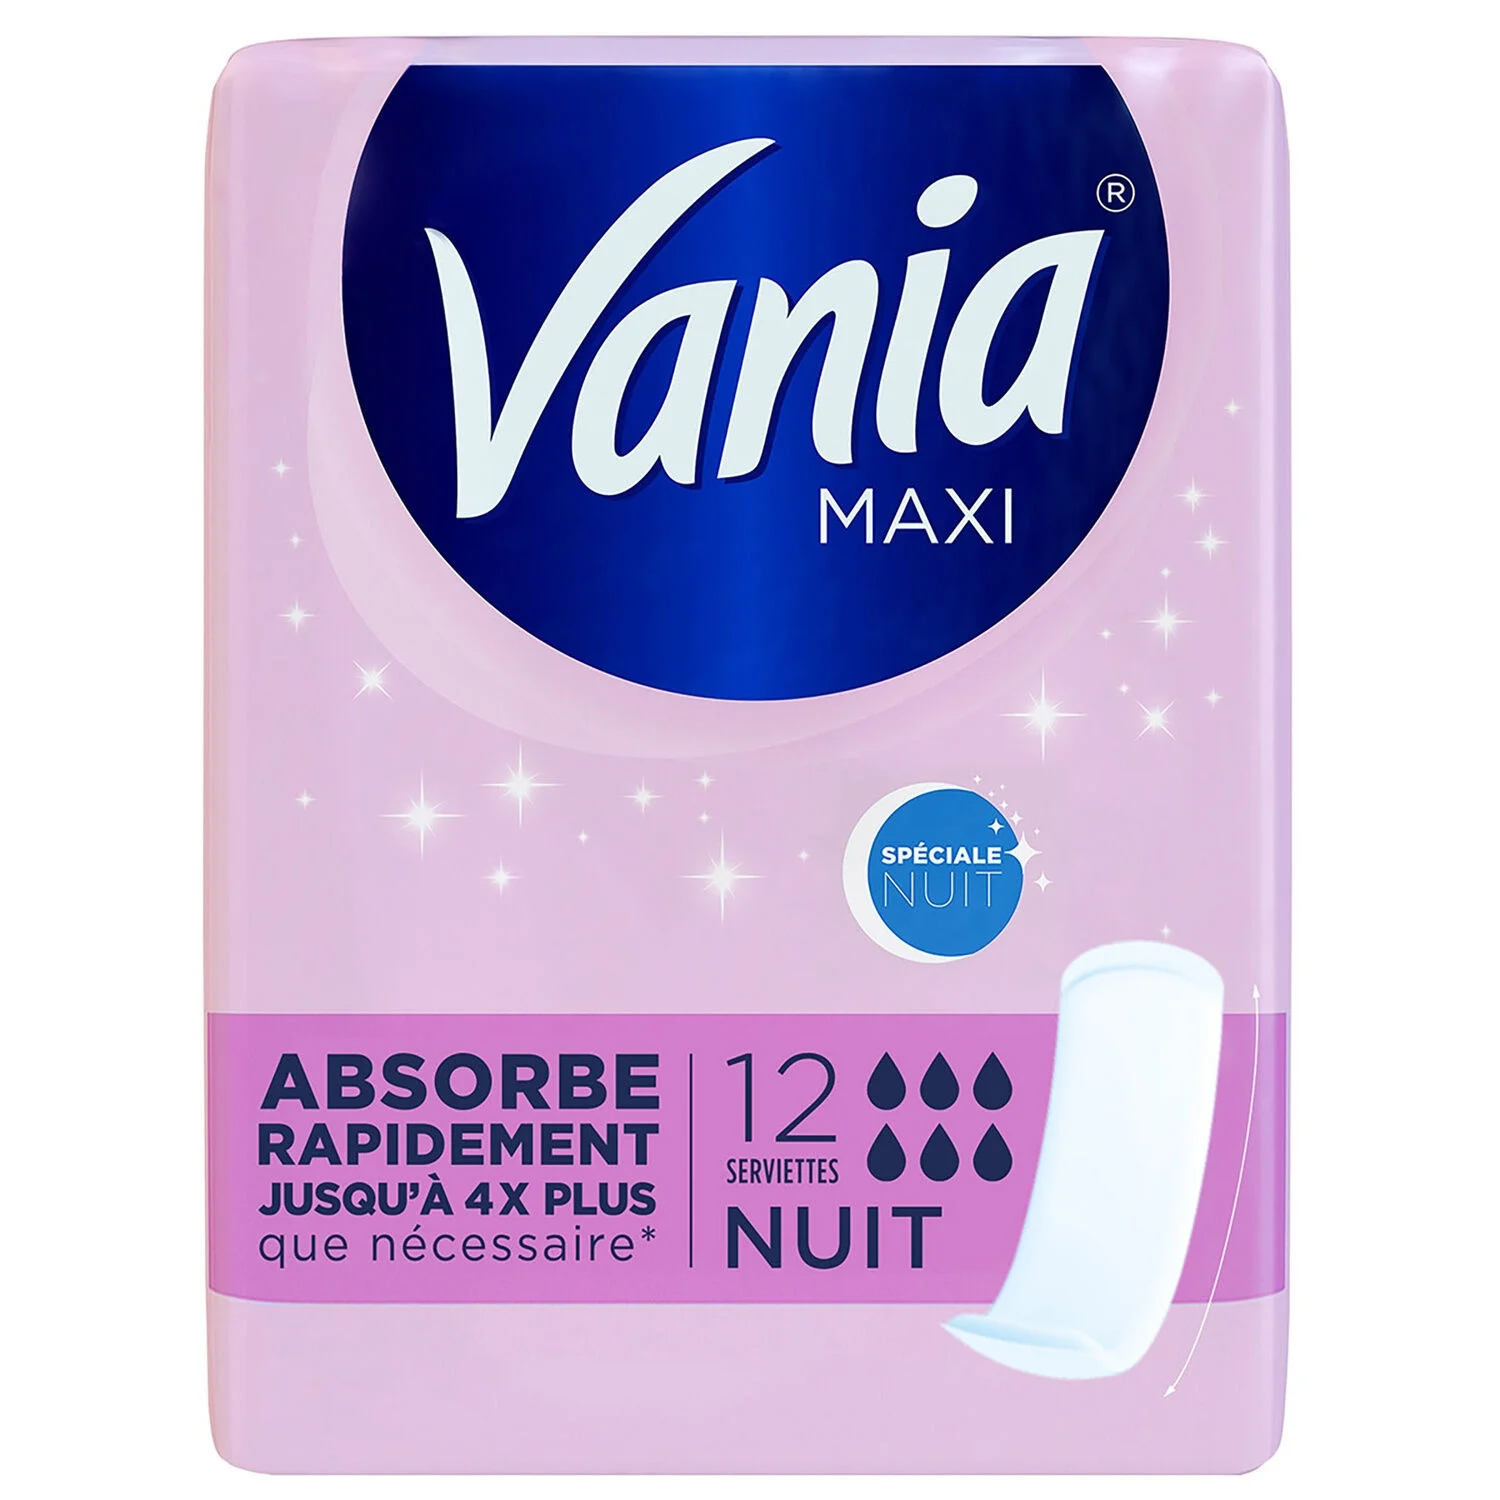 12x Maxi Nuit Vania